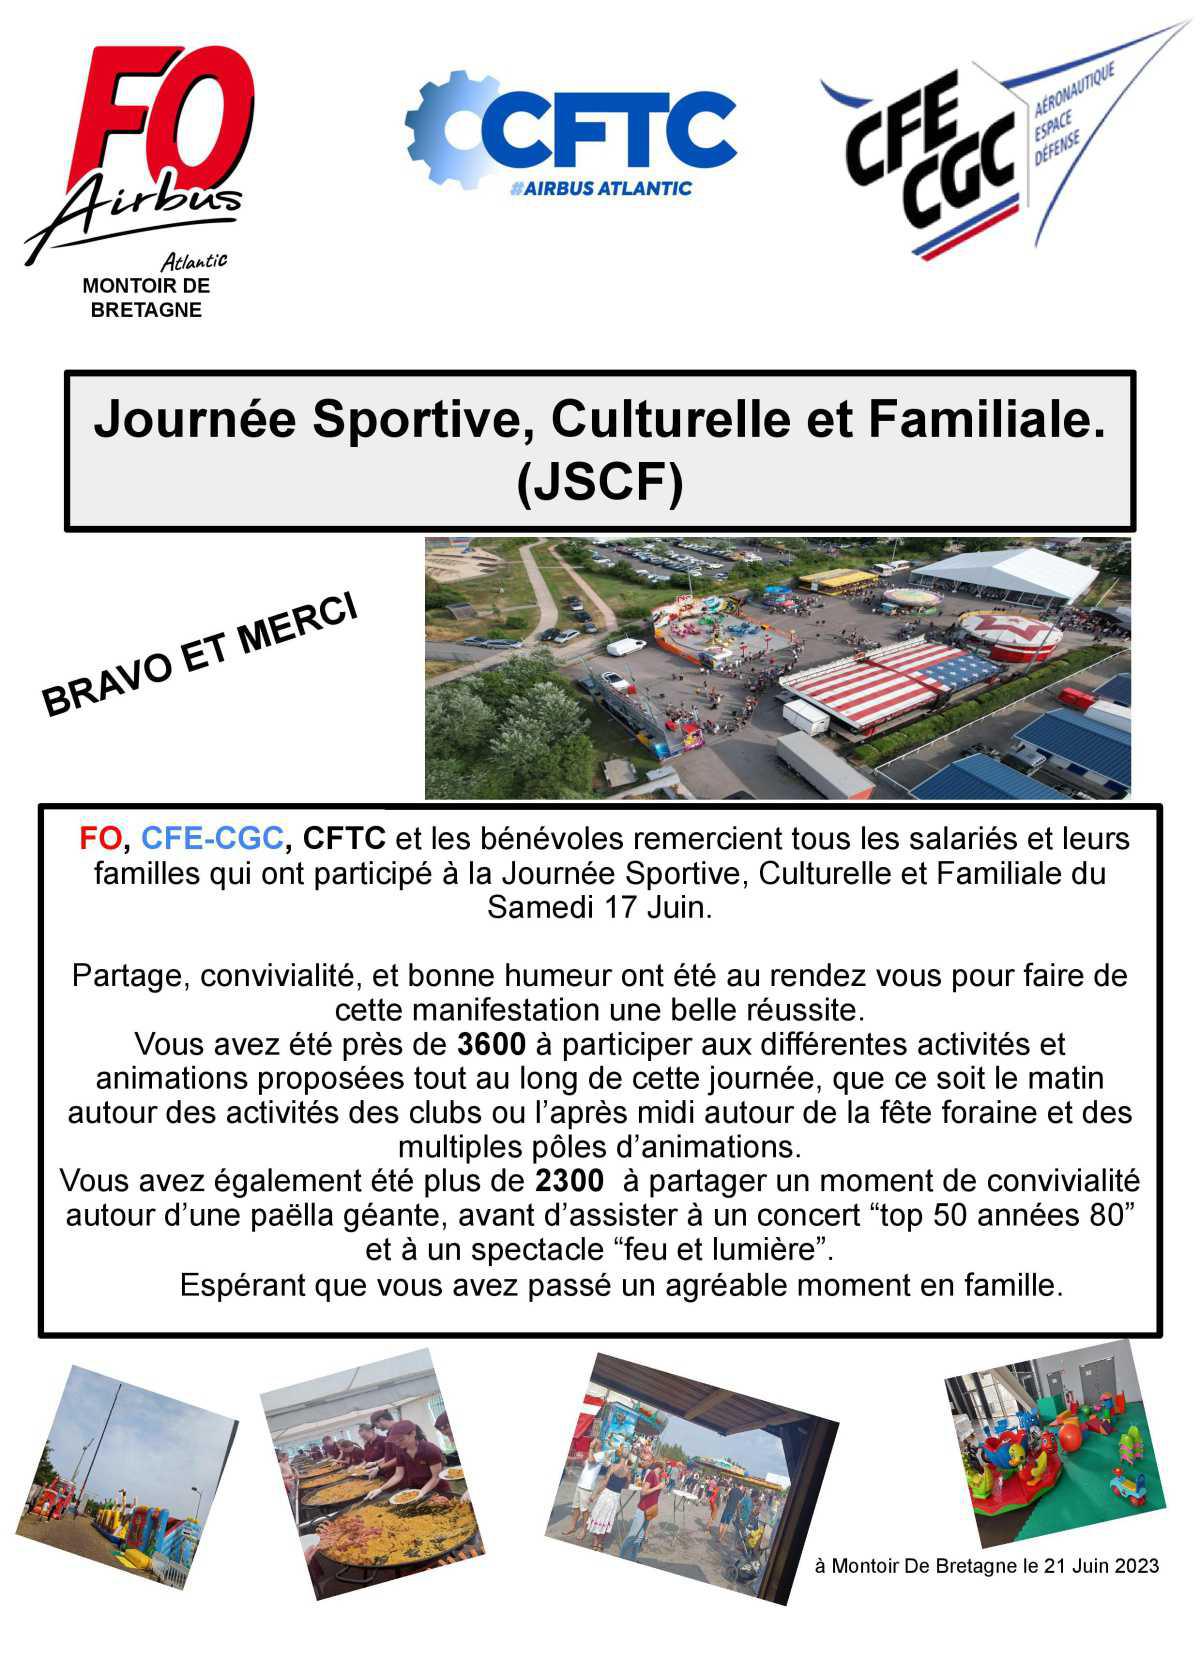 JSCF : Journée Sportive, Culturelle et Familiale